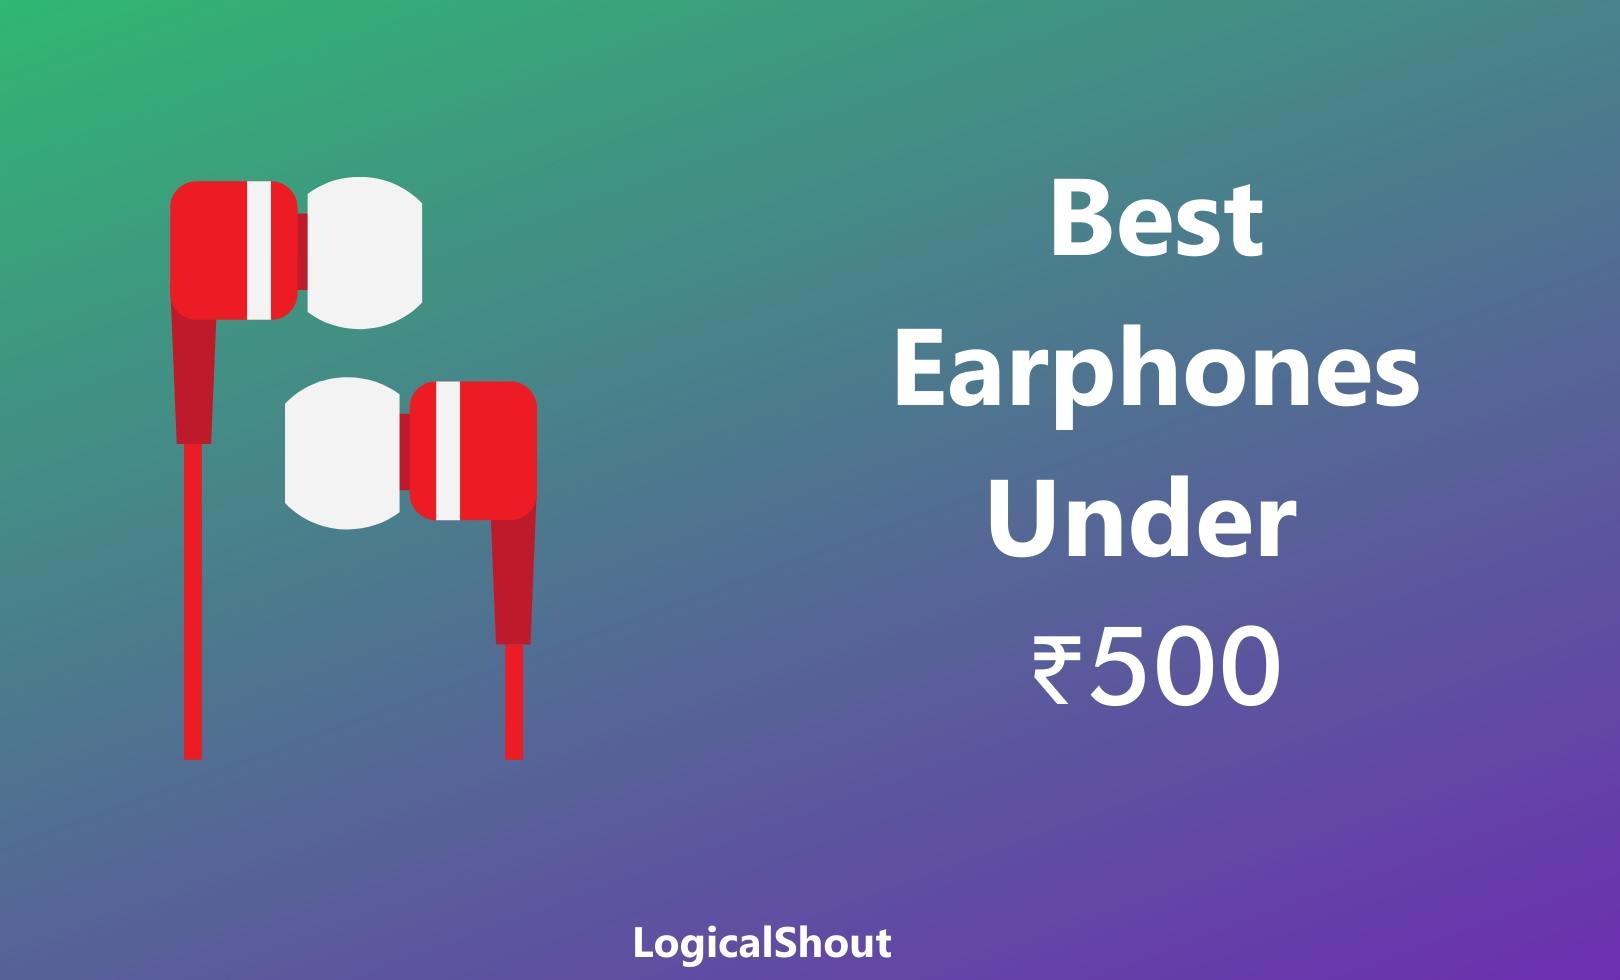 Best Earphones Under ₹500